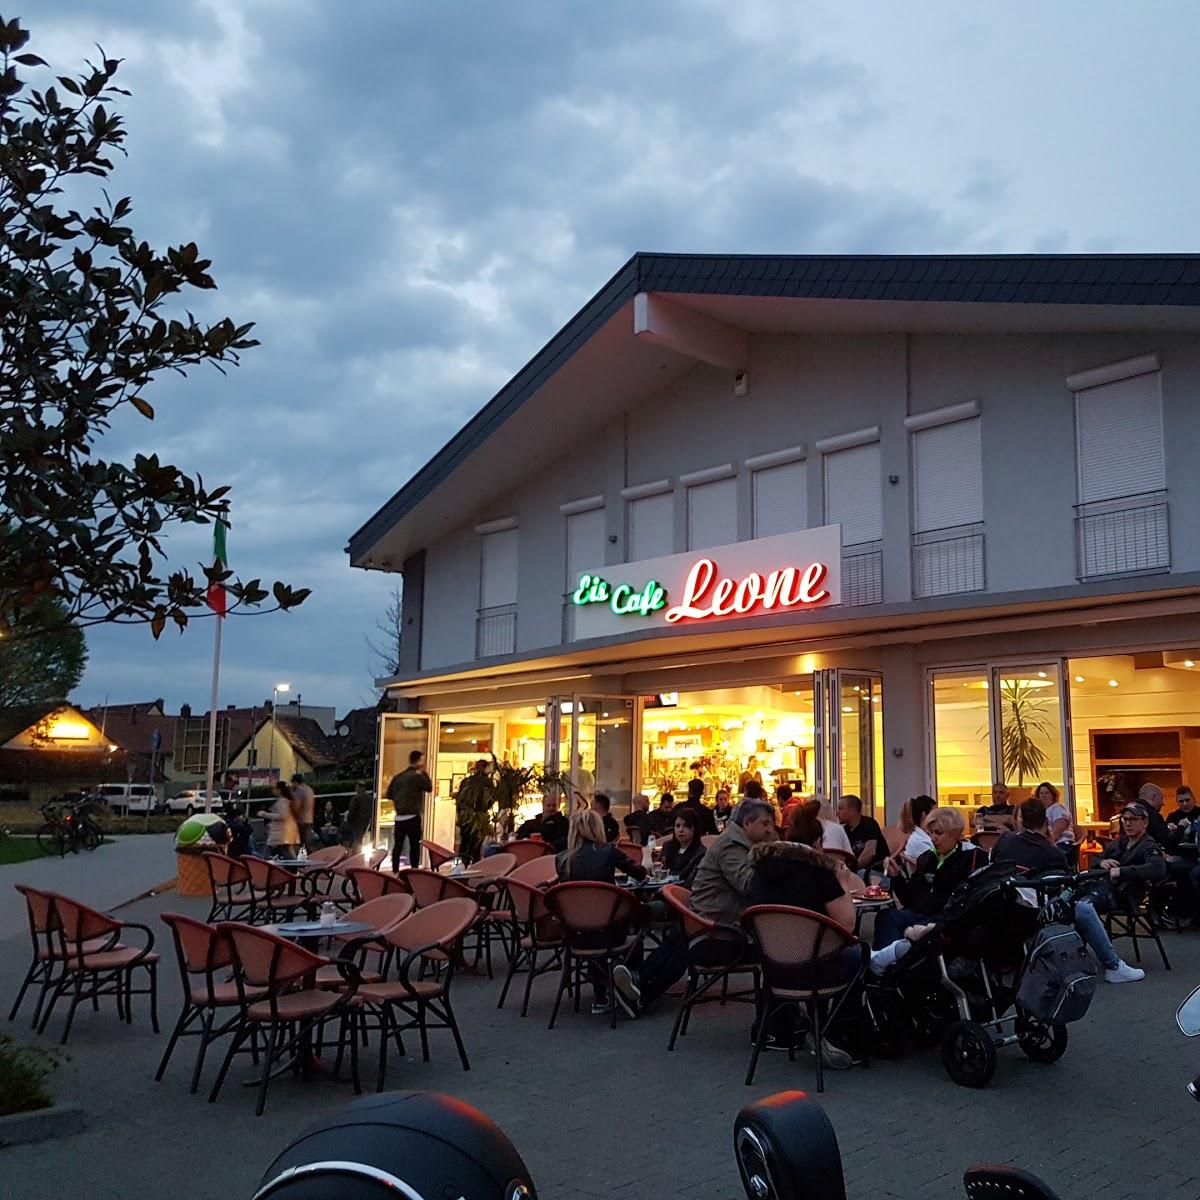 Restaurant "Eis Leone" in Ilvesheim